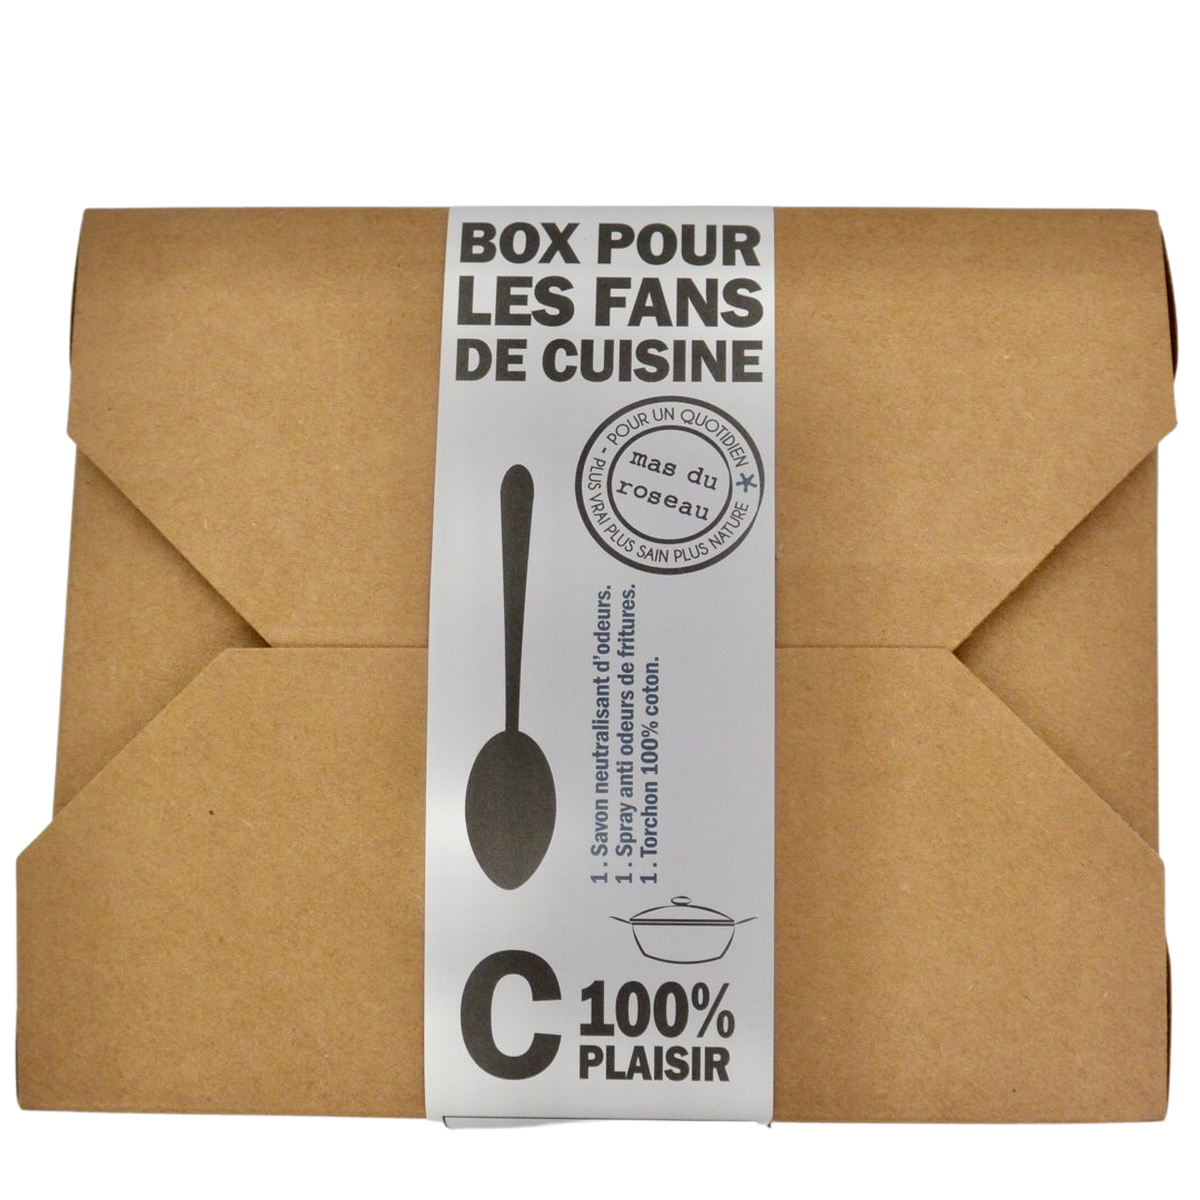 le mas du roseau box pour les fans de cuisine kit cadeau une idee cadeau (2)